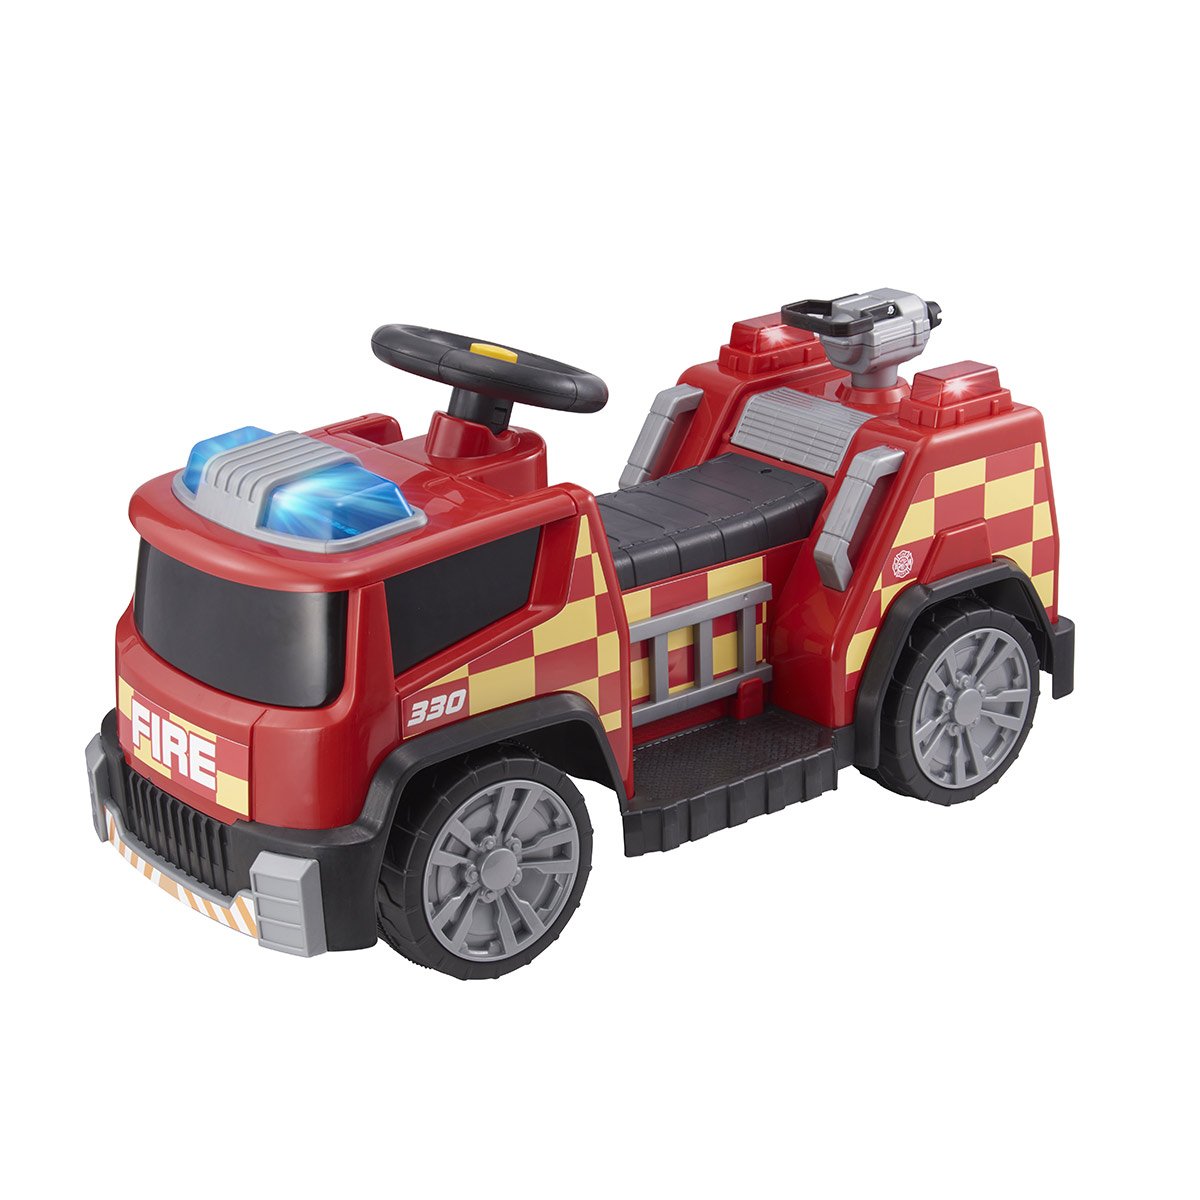 Porteur bébé voiture de pompier